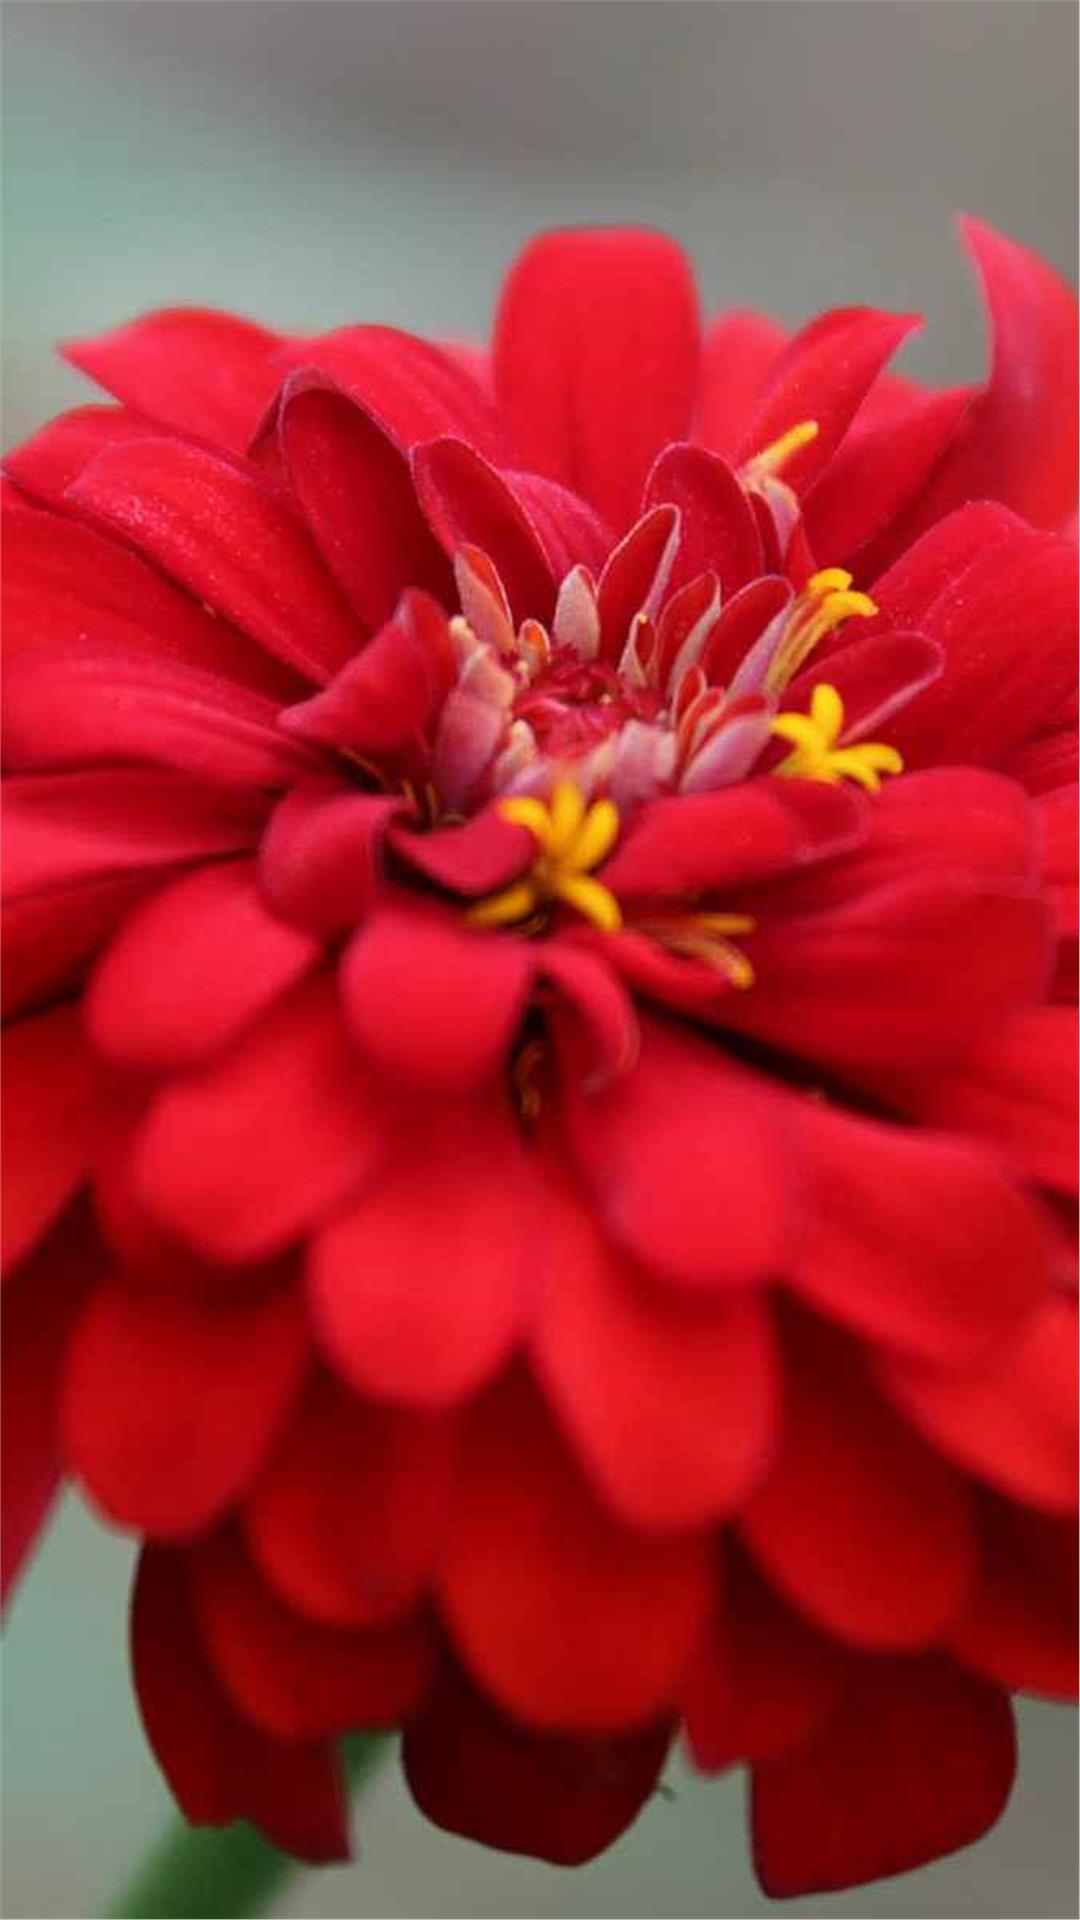 Zinnia Flower iPhone Wallpaper